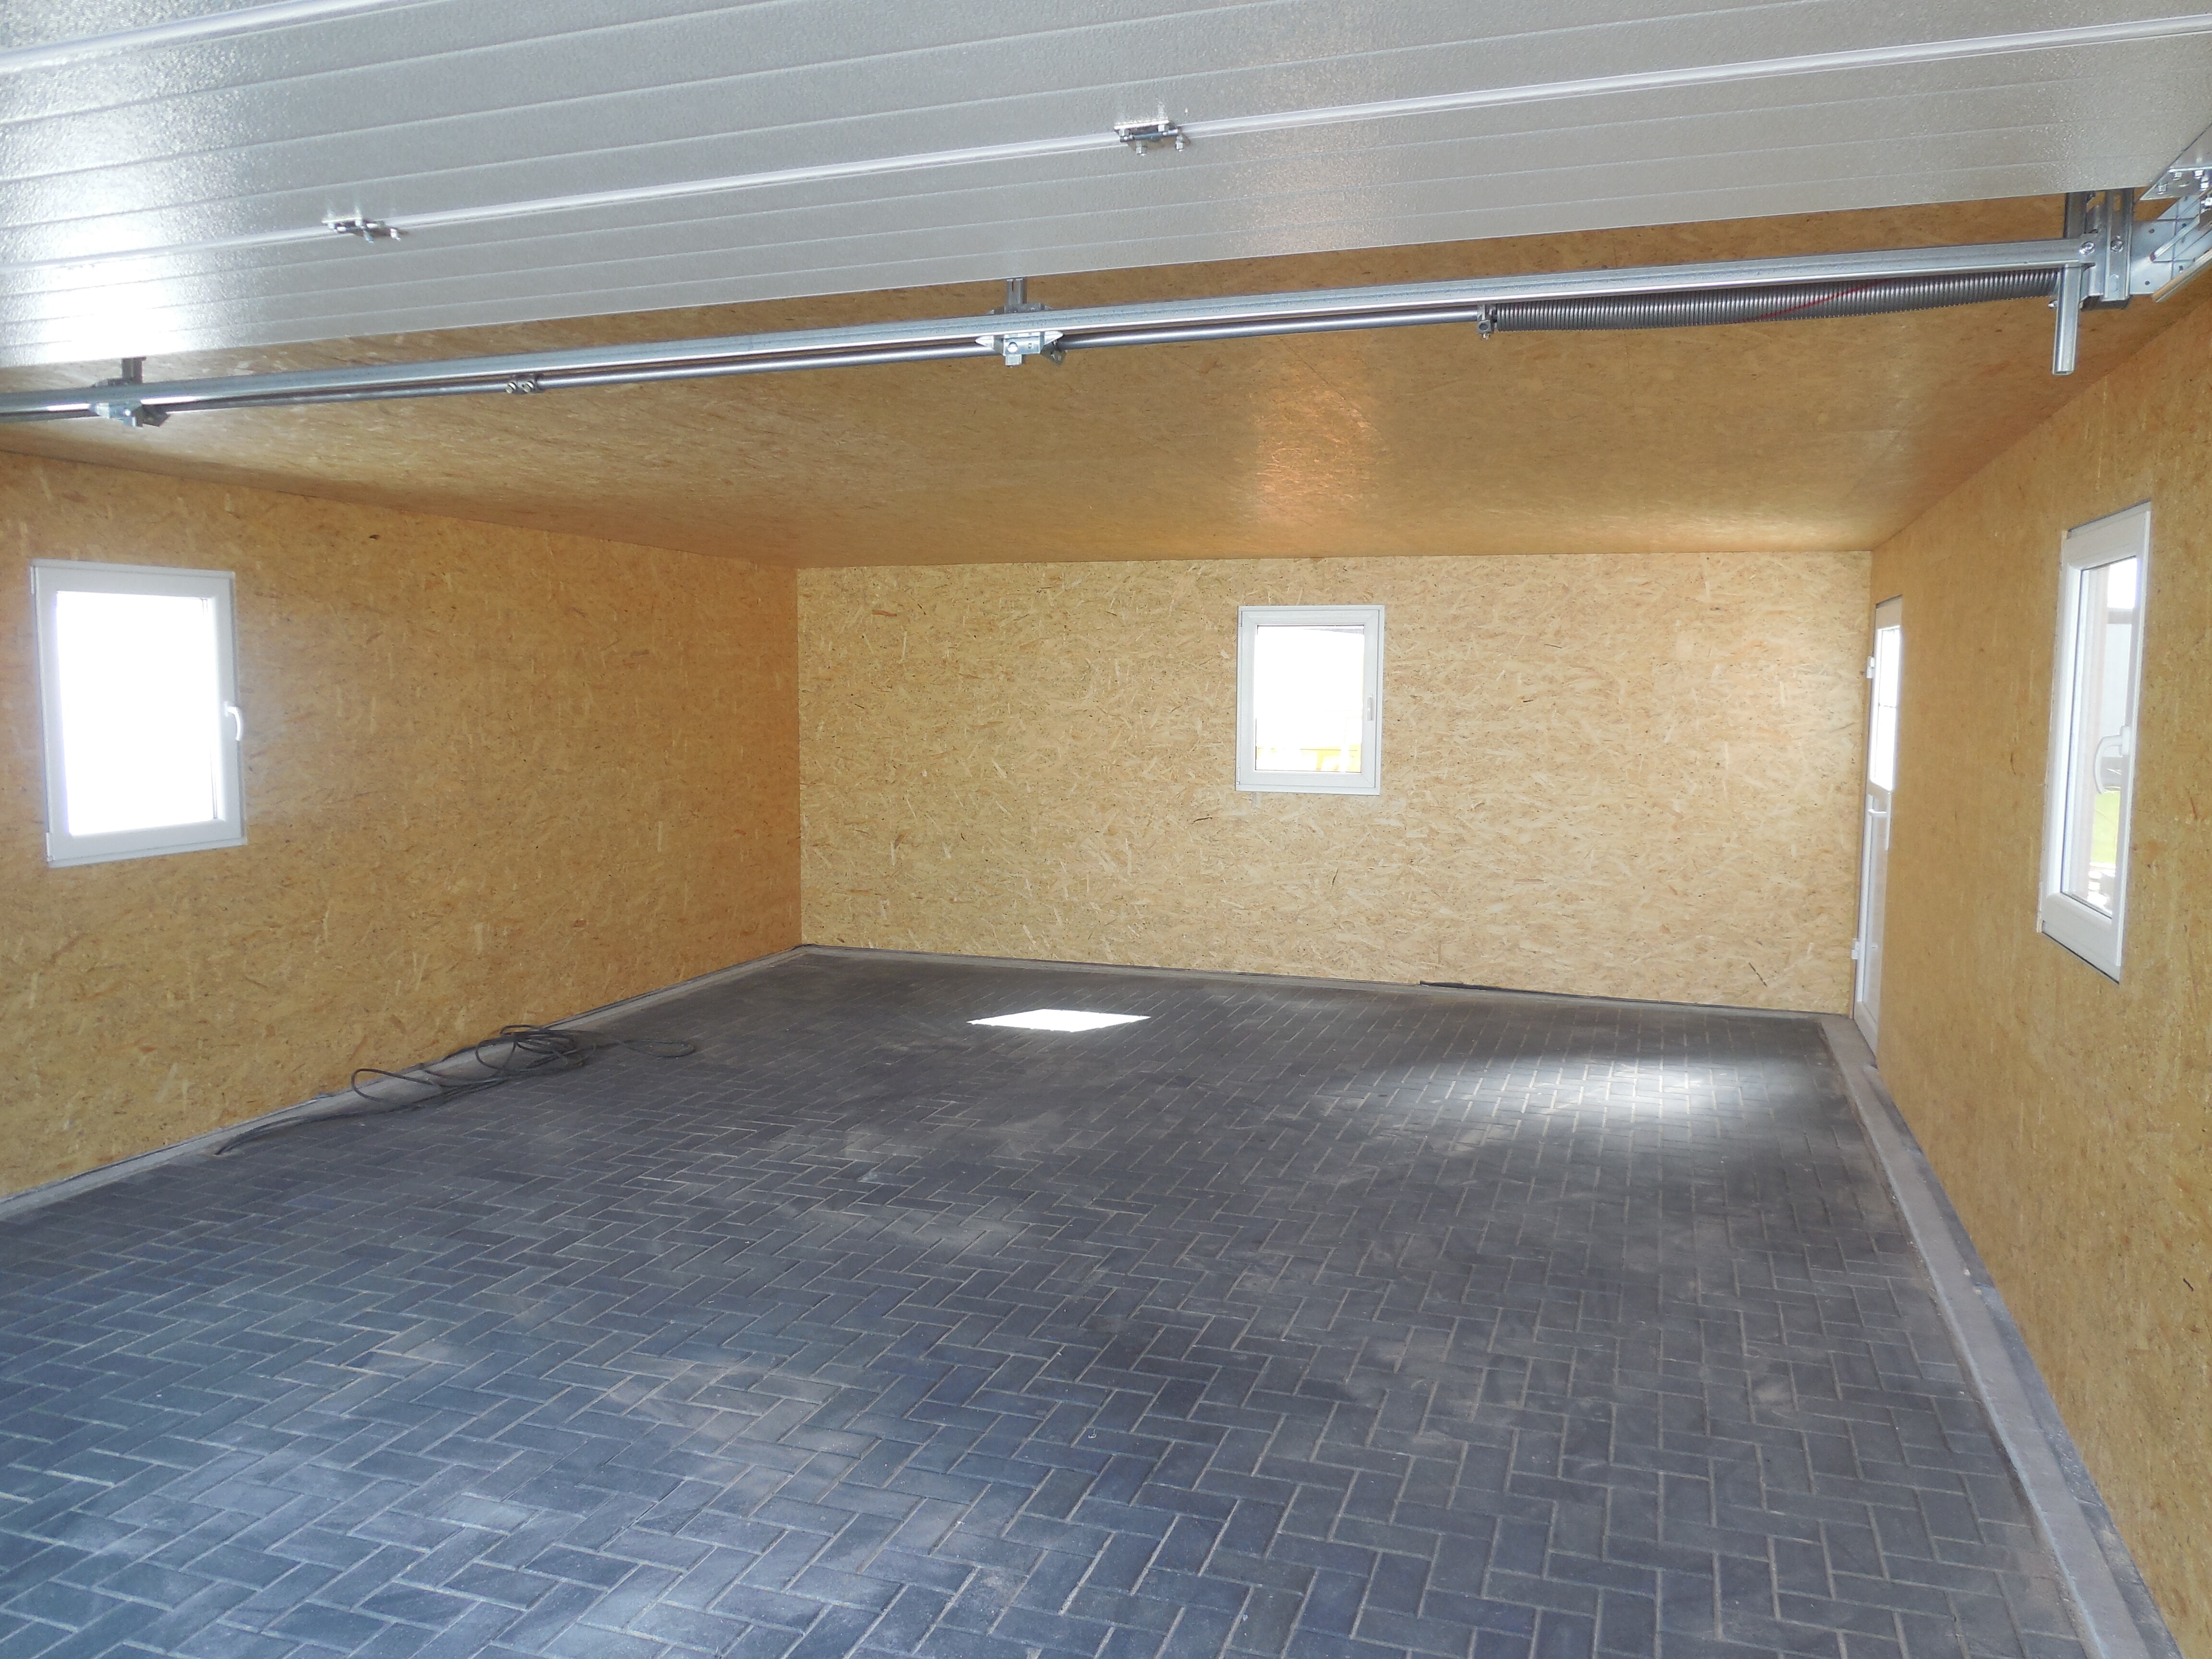 Garage in Holzständerbauweise mit Dämmung und Innenausbau.